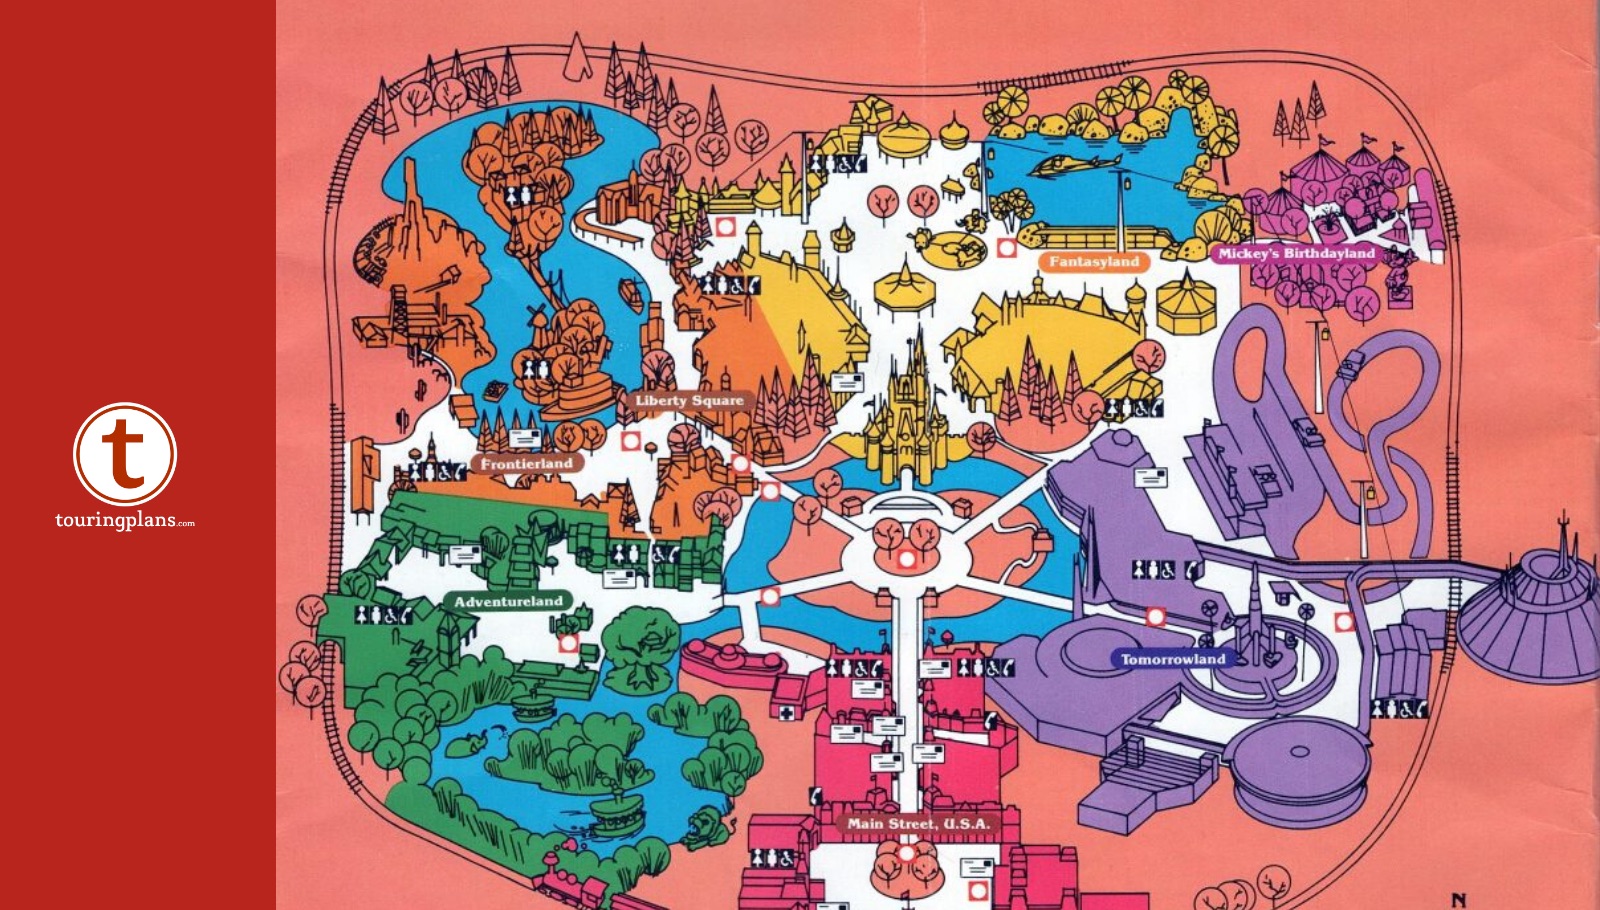 new fantasyland map